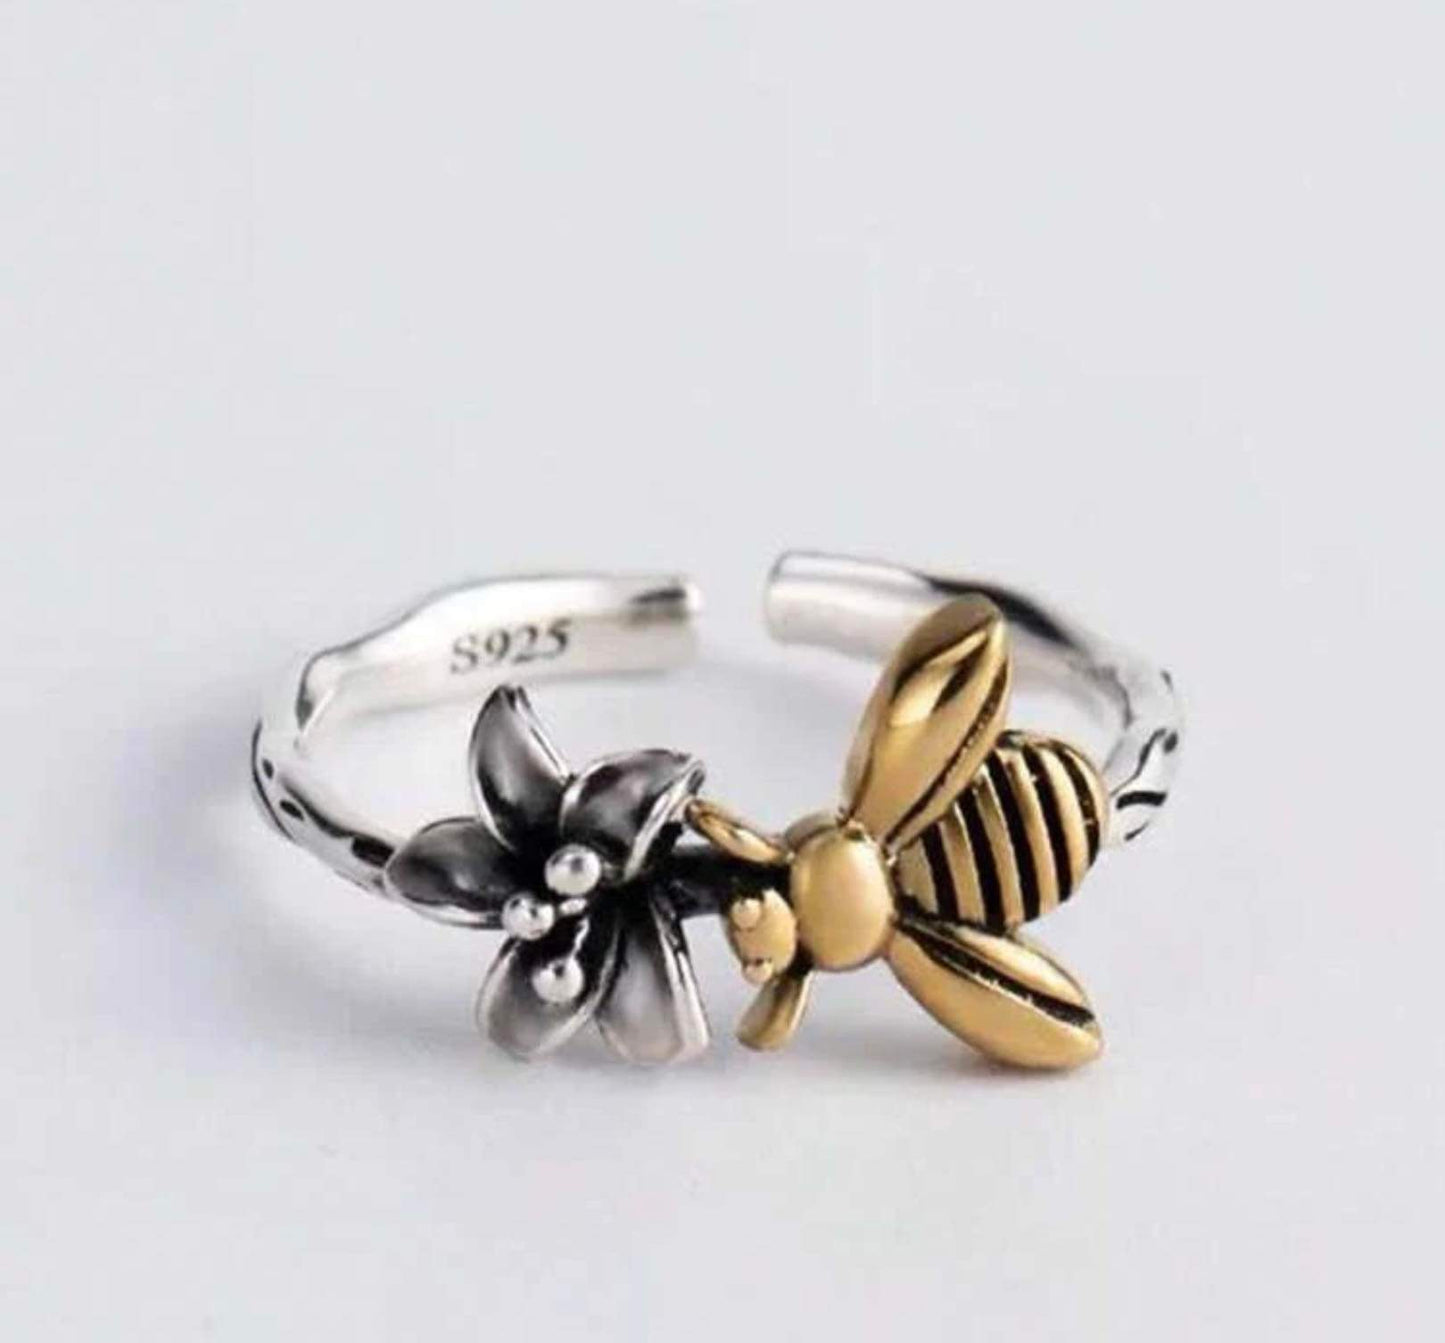 Bumblebee ring